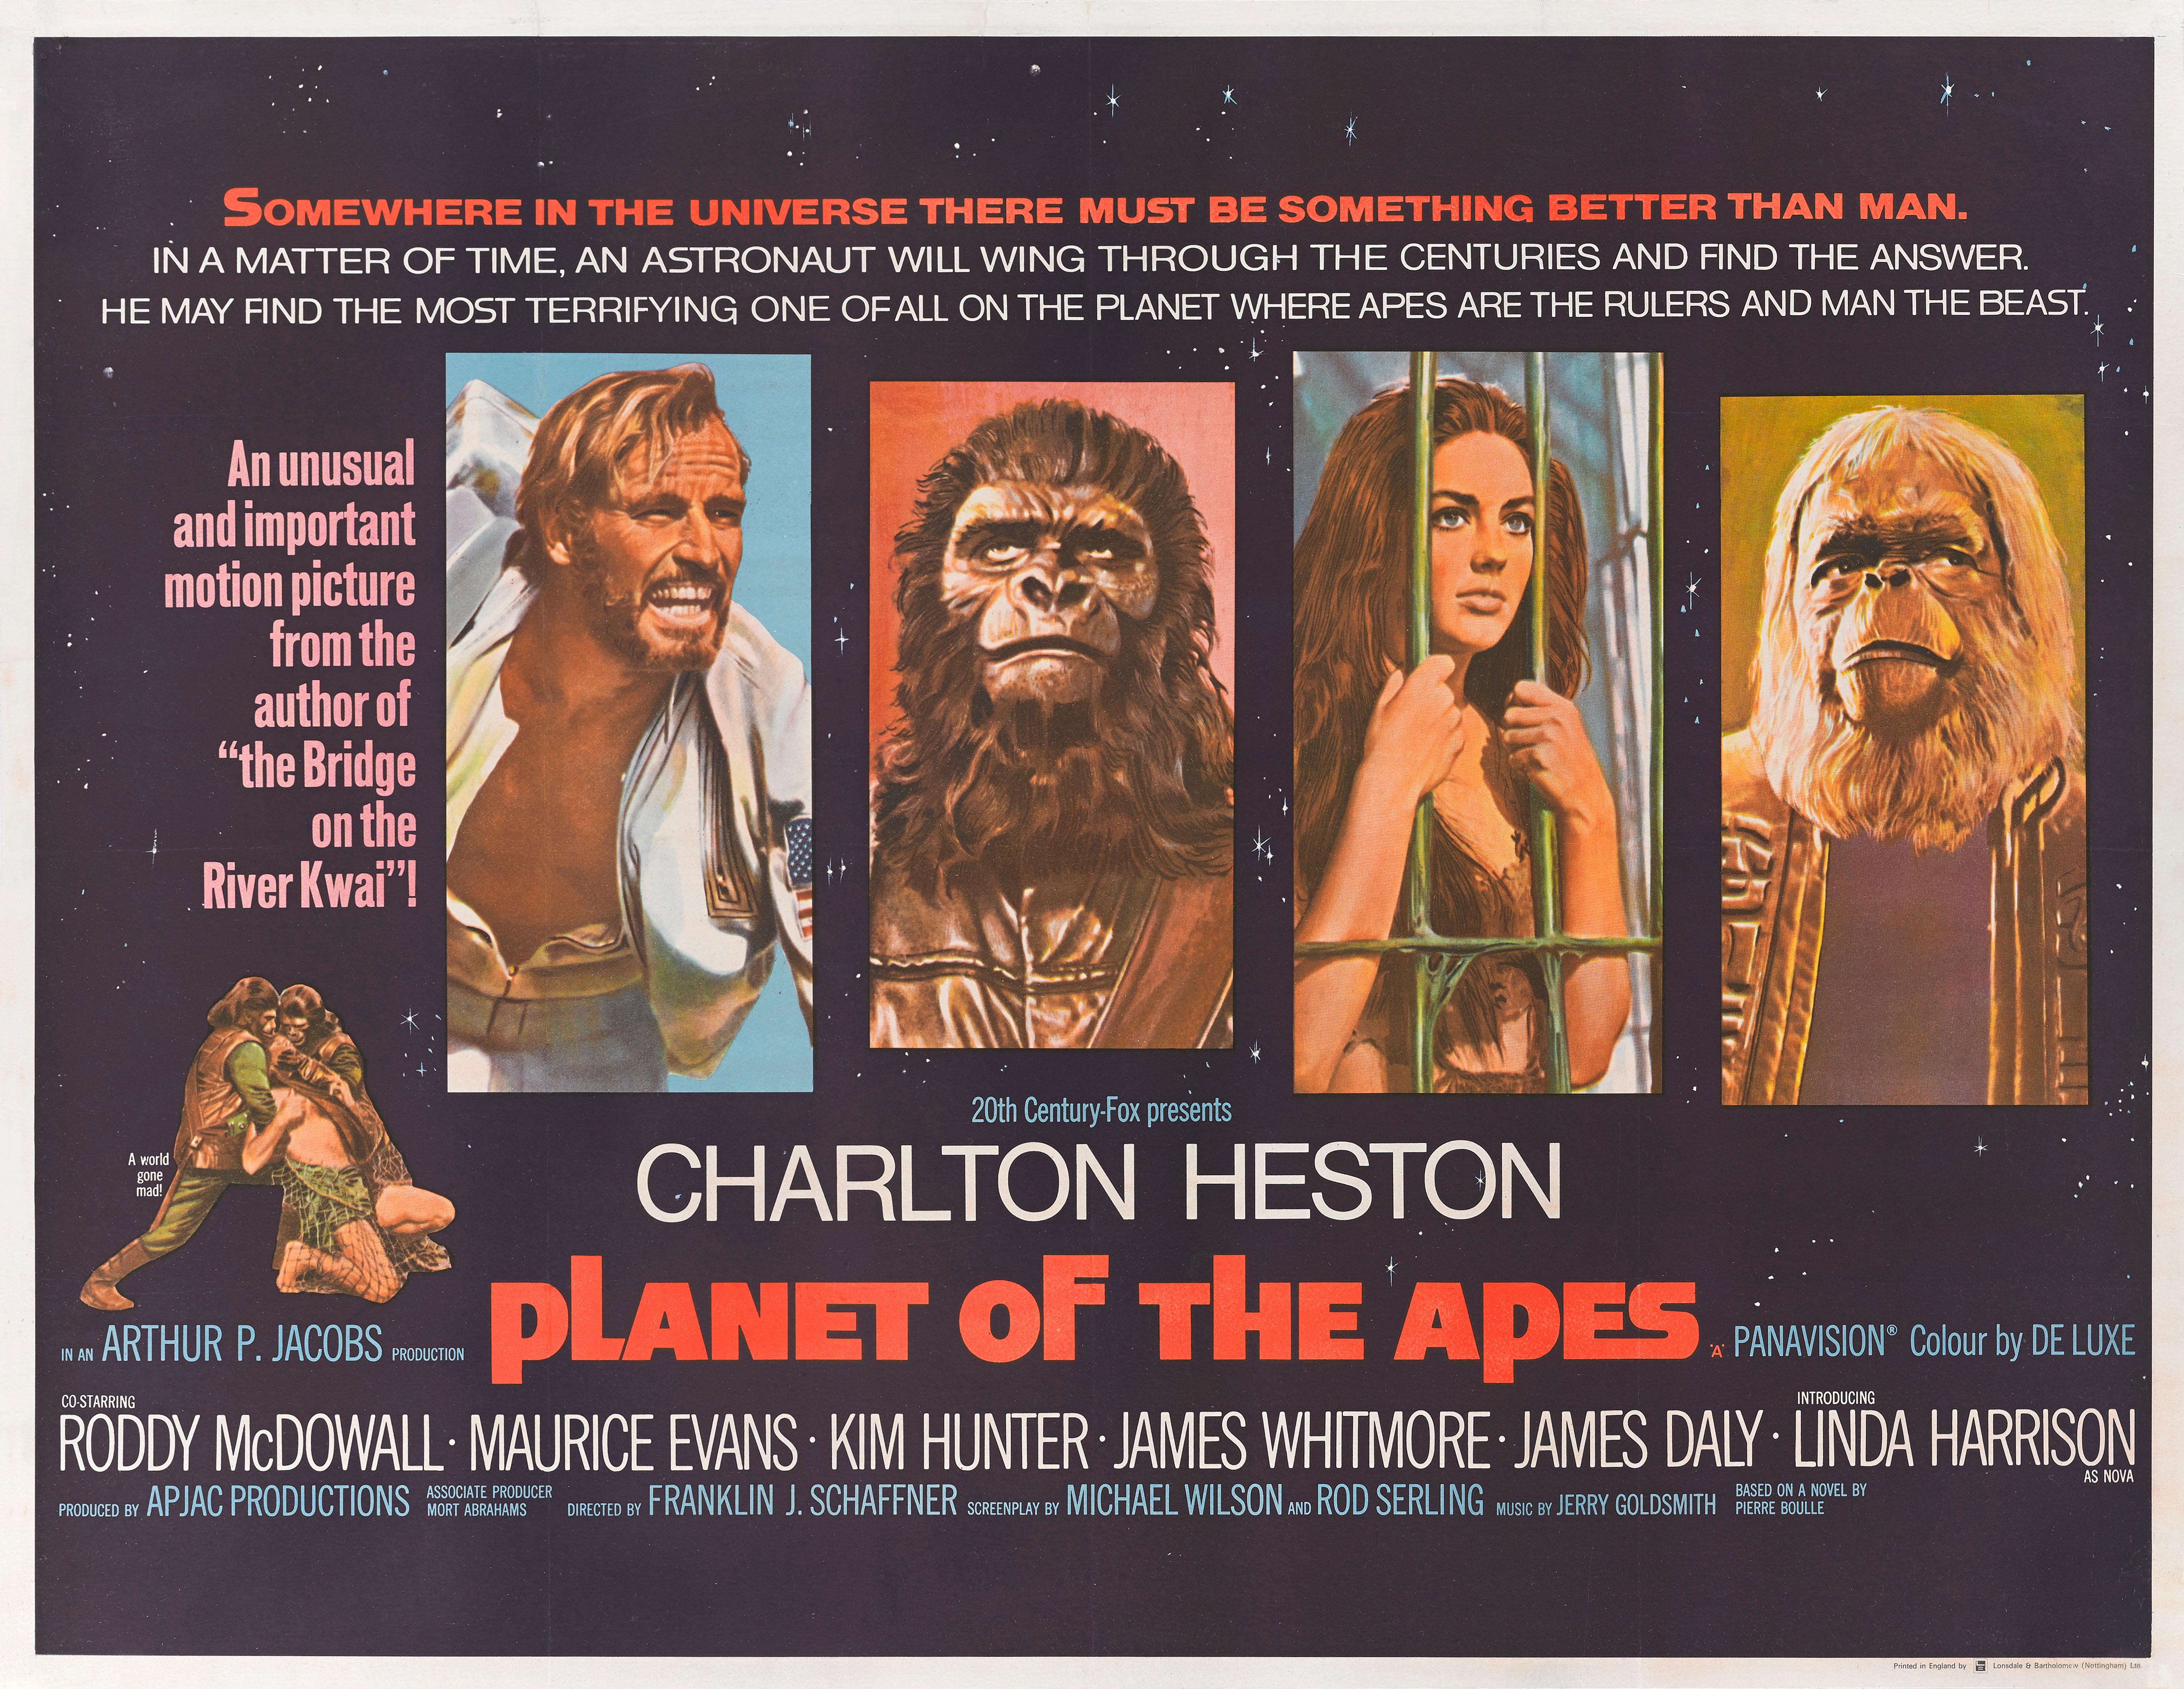 Affiche de film britannique originale pour le premier film de la Planète des singes en 1968.
L'affiche britannique est la plus belle de ce titre. Ce film de science-fiction culte a été réalisé par Franklin J. Schaffner, et met en vedette Charlton